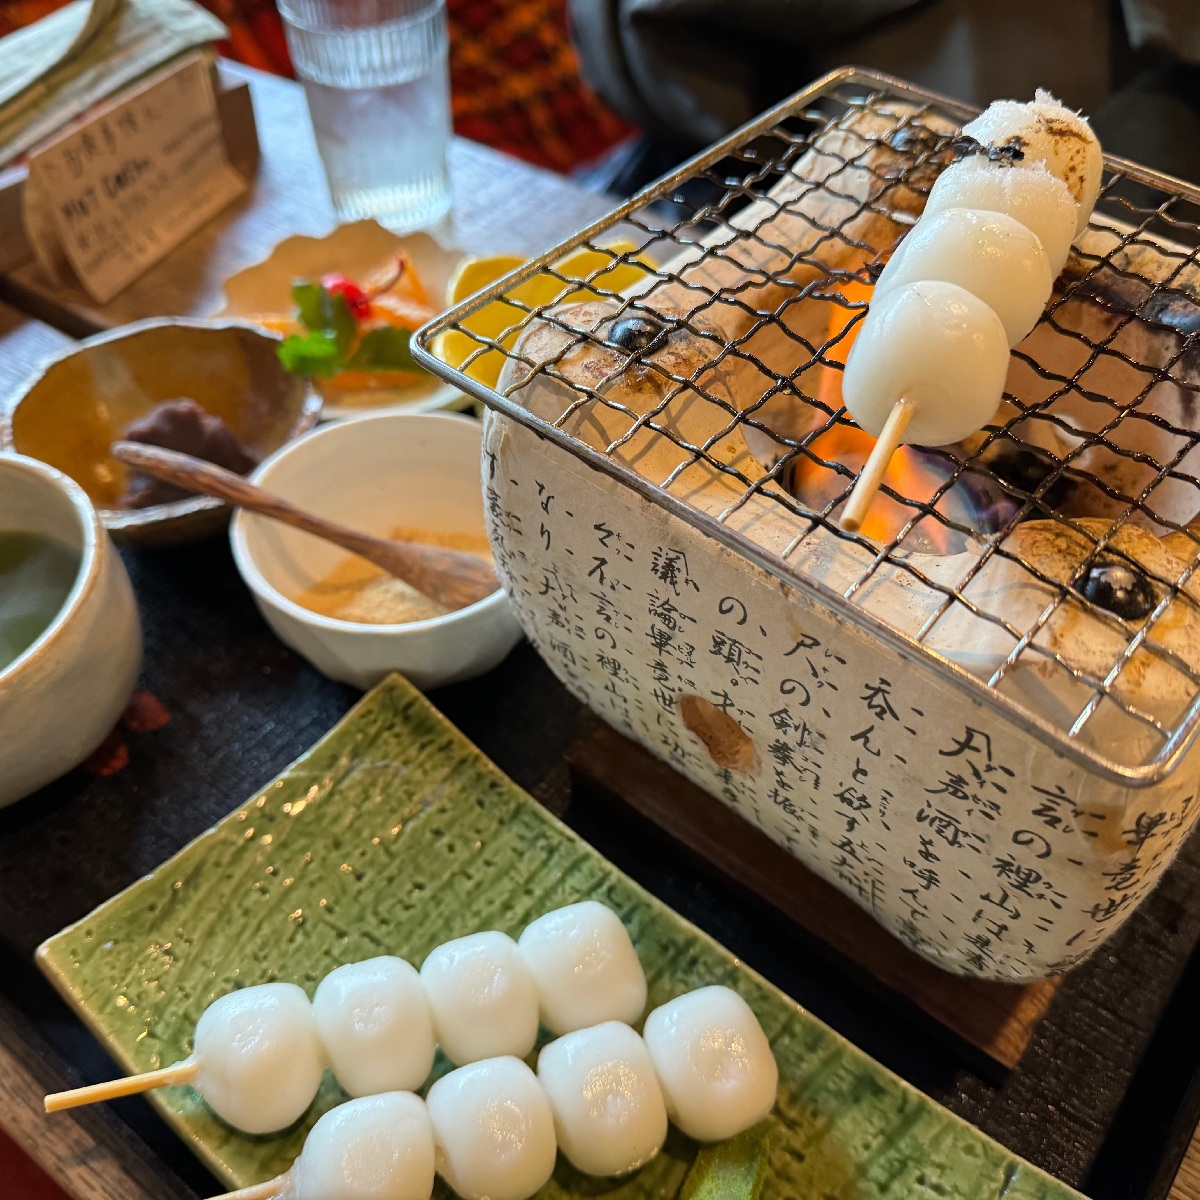 【和歌山】七輪で焼くもちもちのお団子が楽しめる「Roji CAFE」